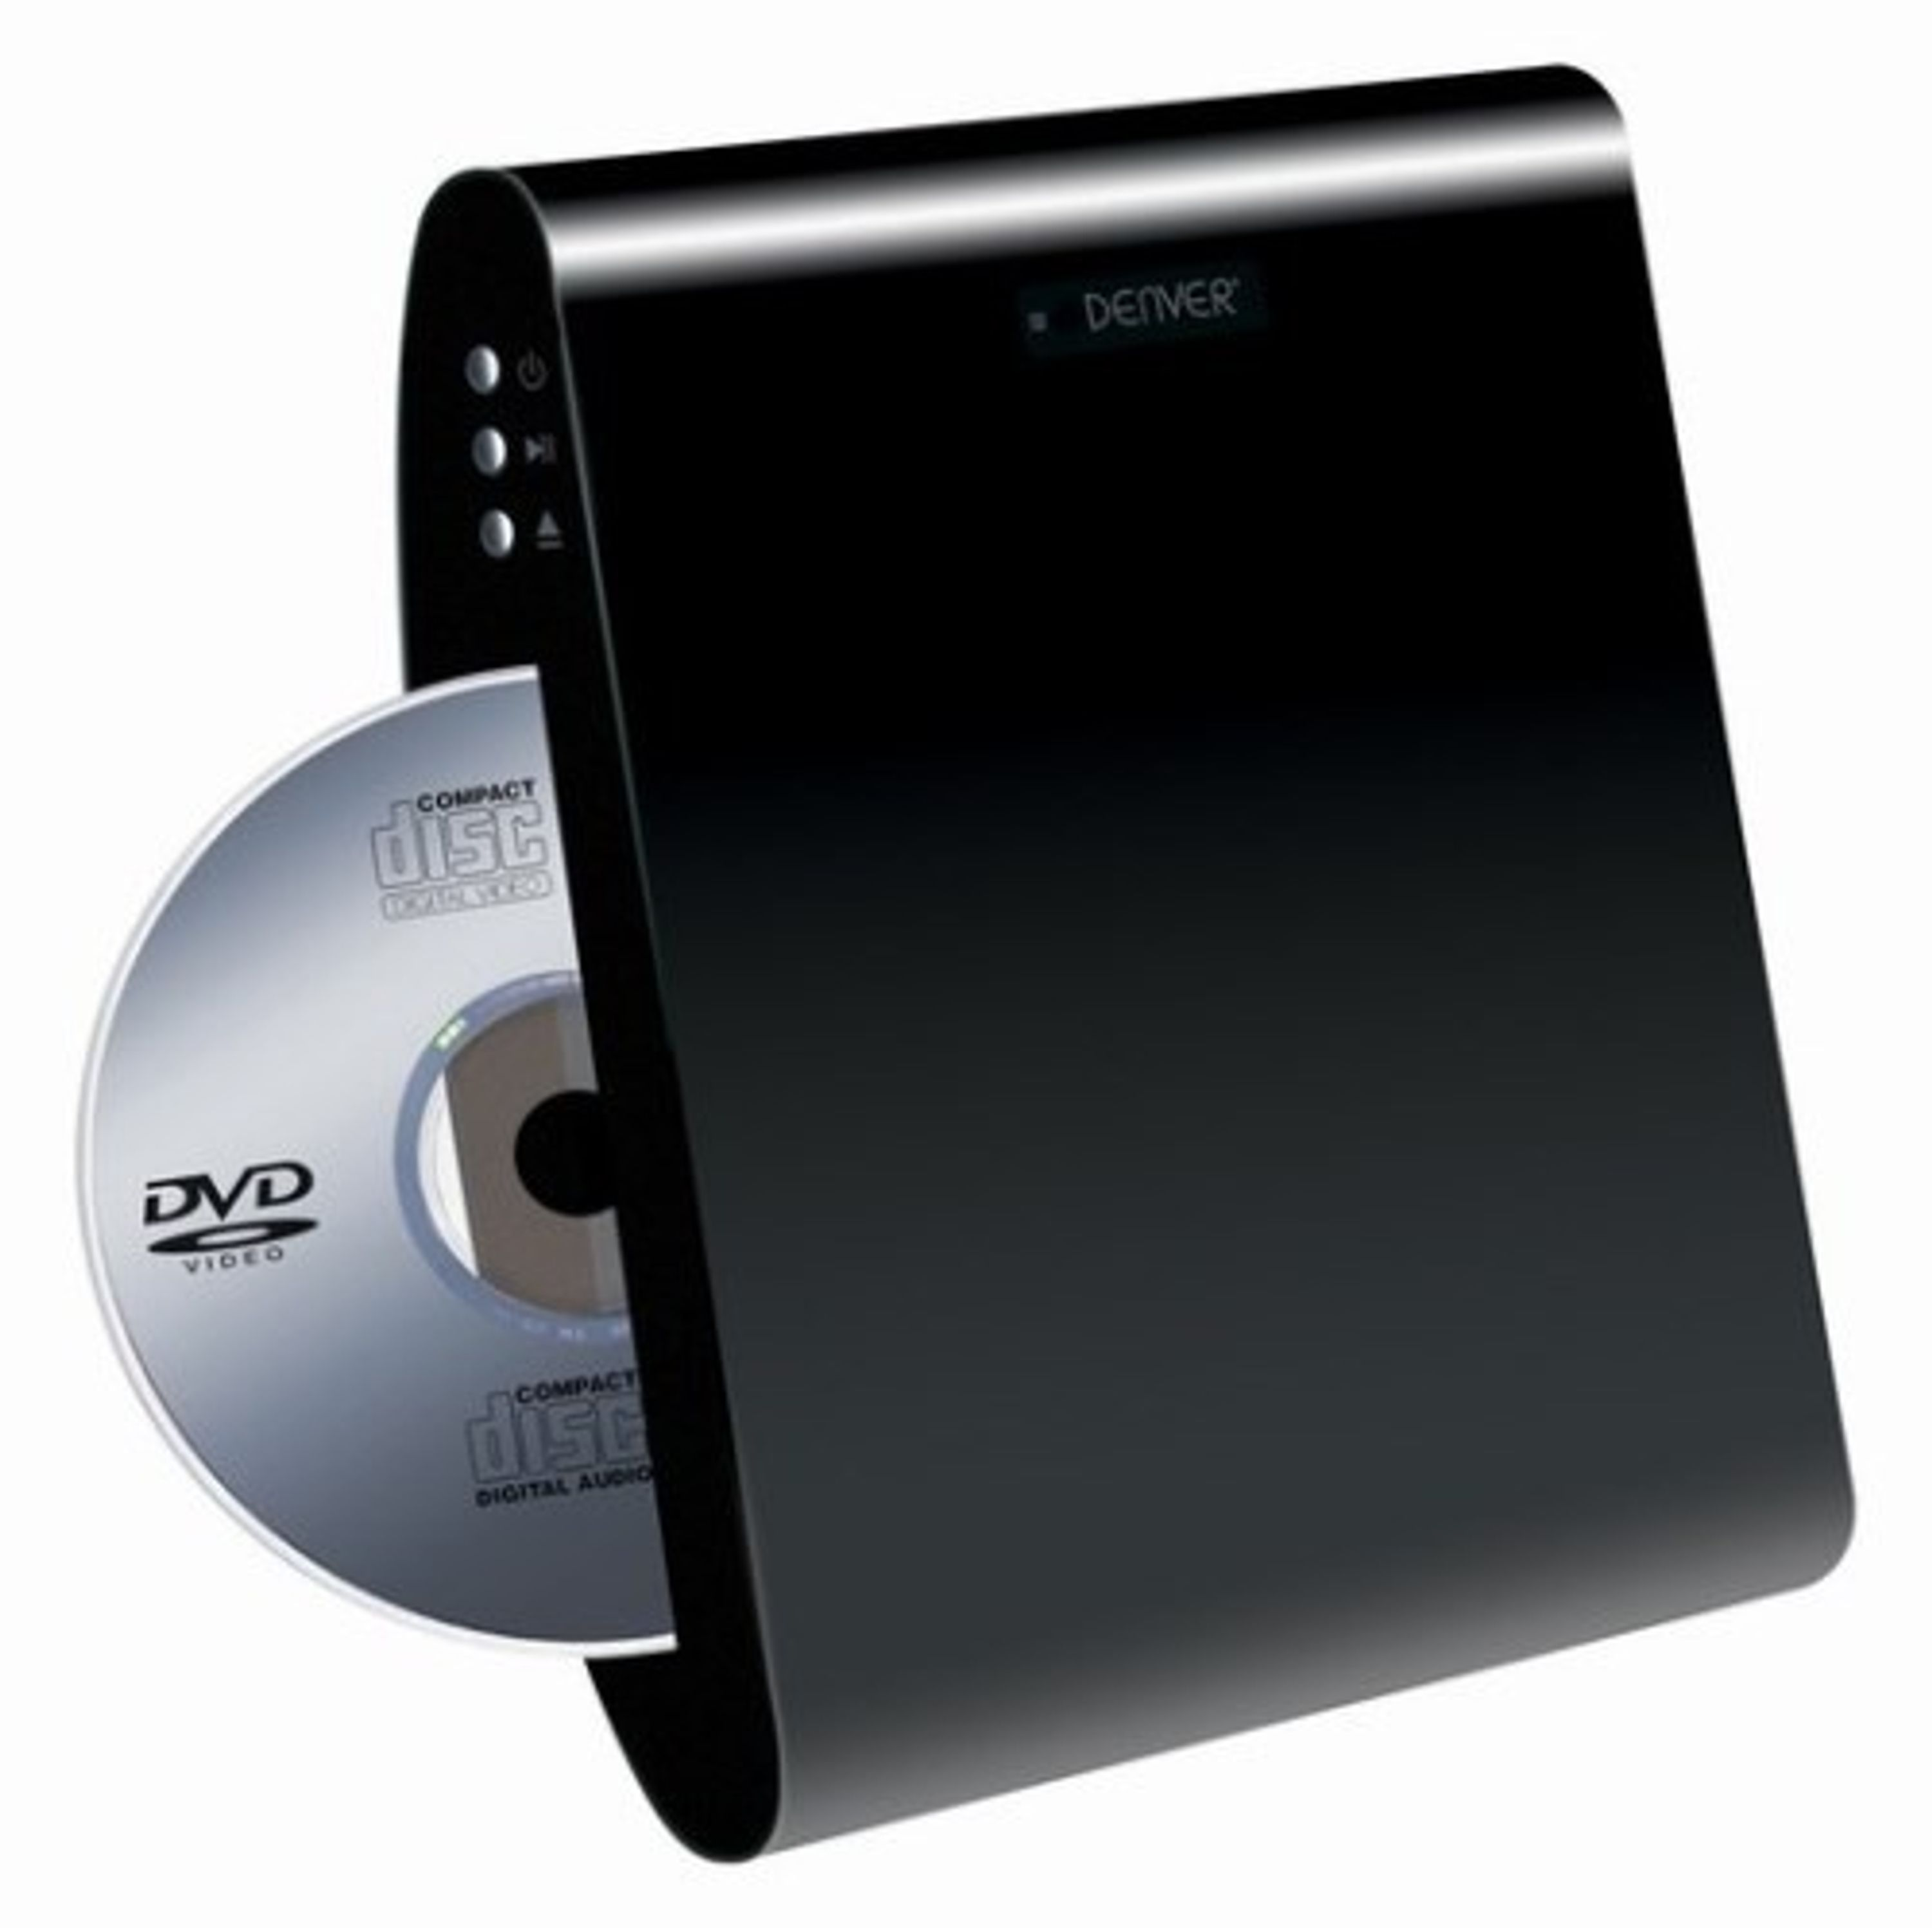 DENVER DVD Player schwarz DWM-100